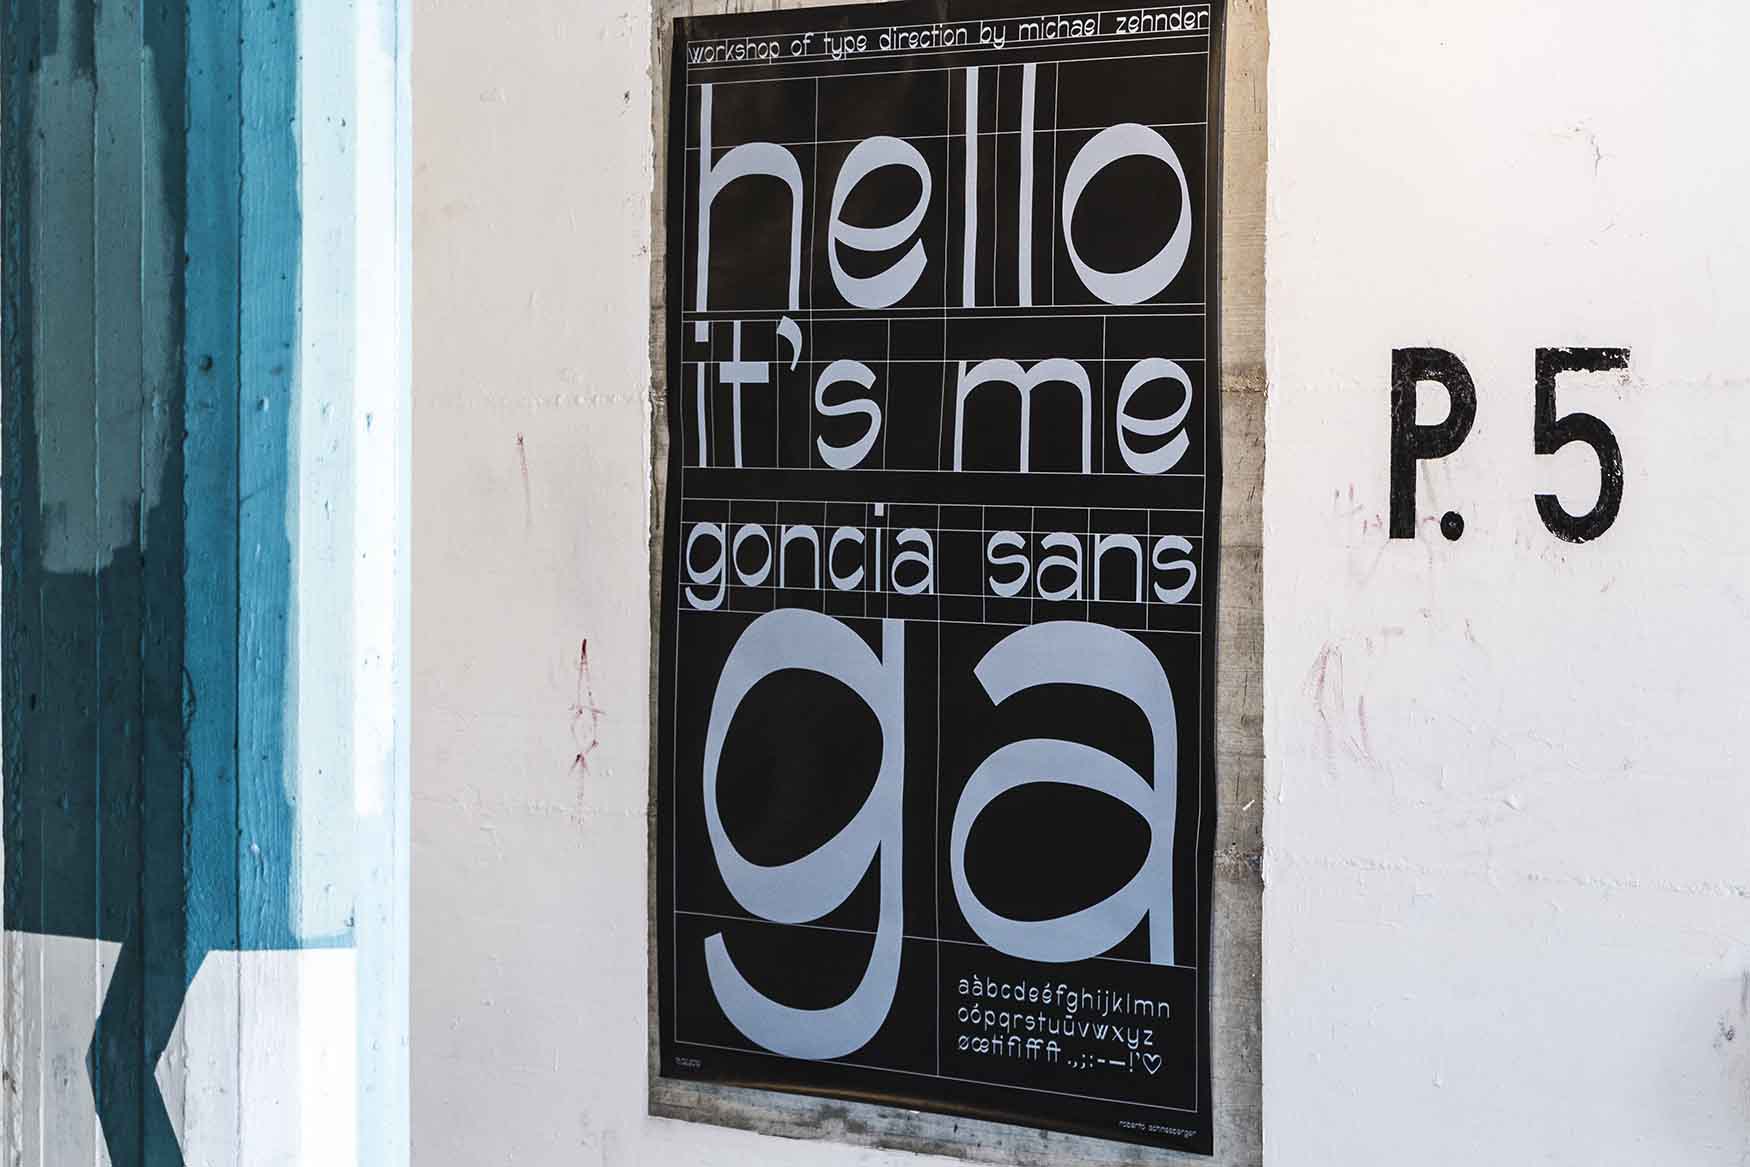 Goncia Sans poster design ticino